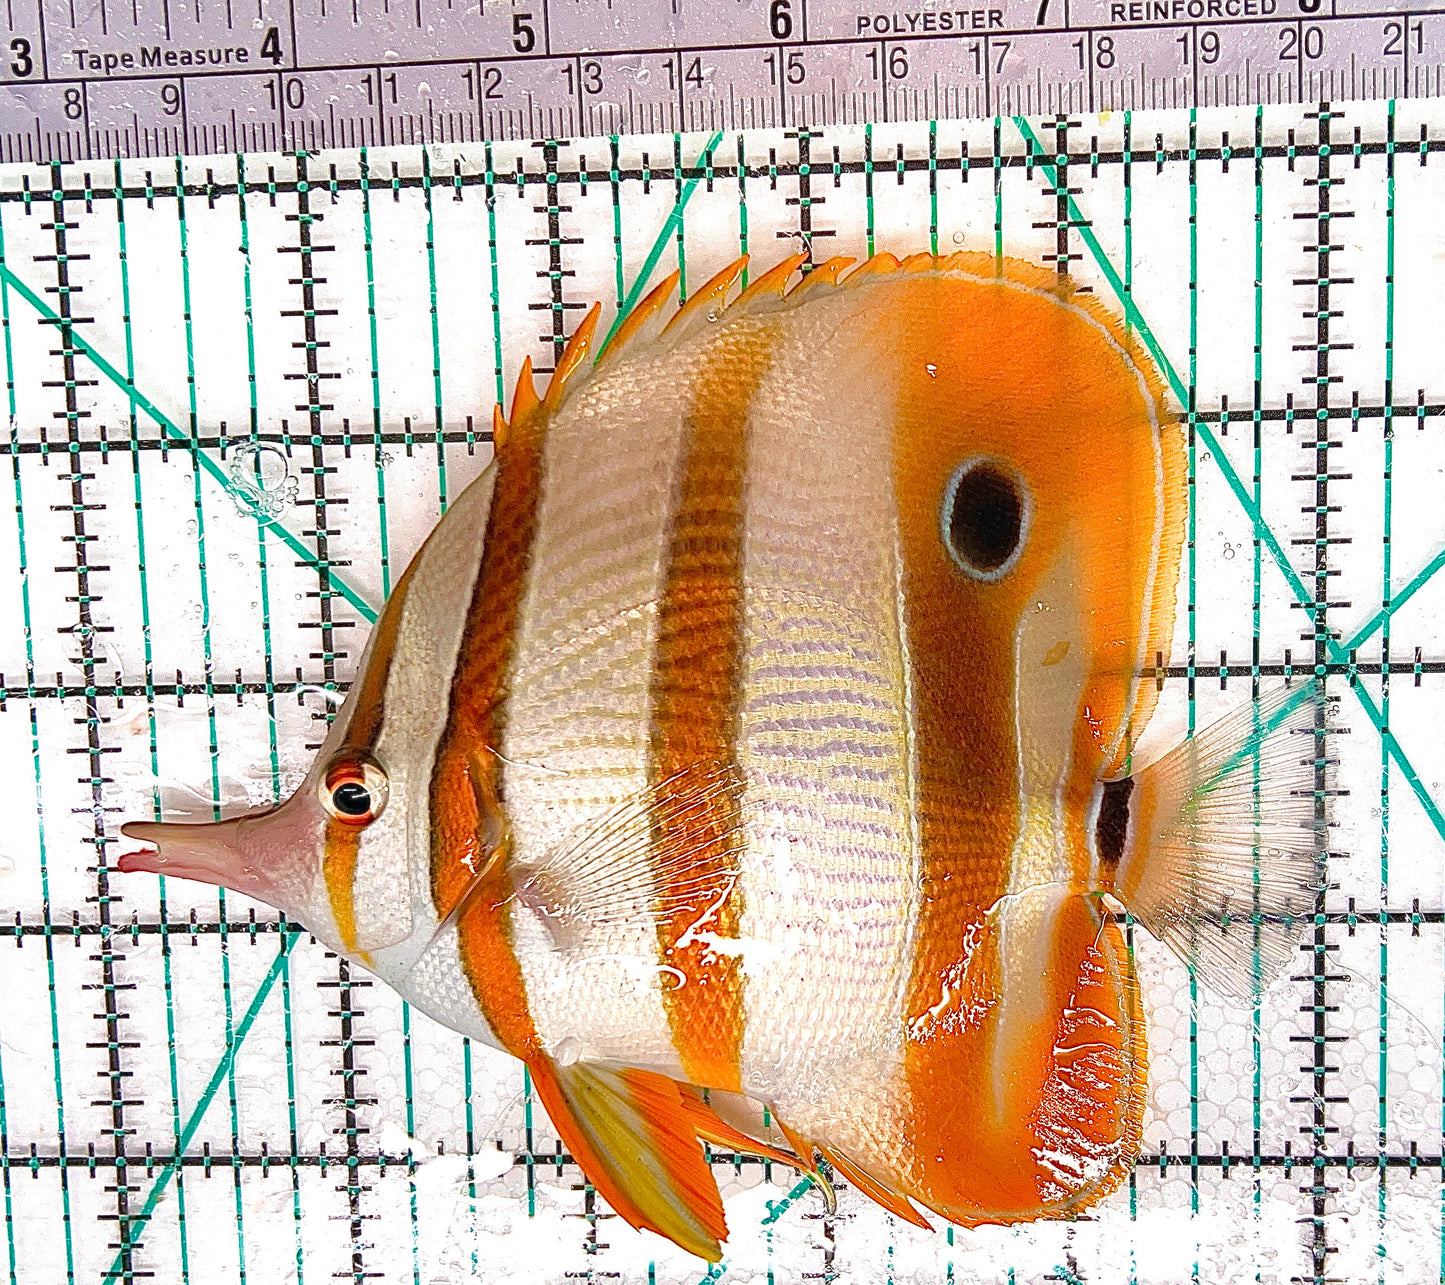 Copperband Butterflyfish CB050601 WYSIWYG Size: L 5" approx